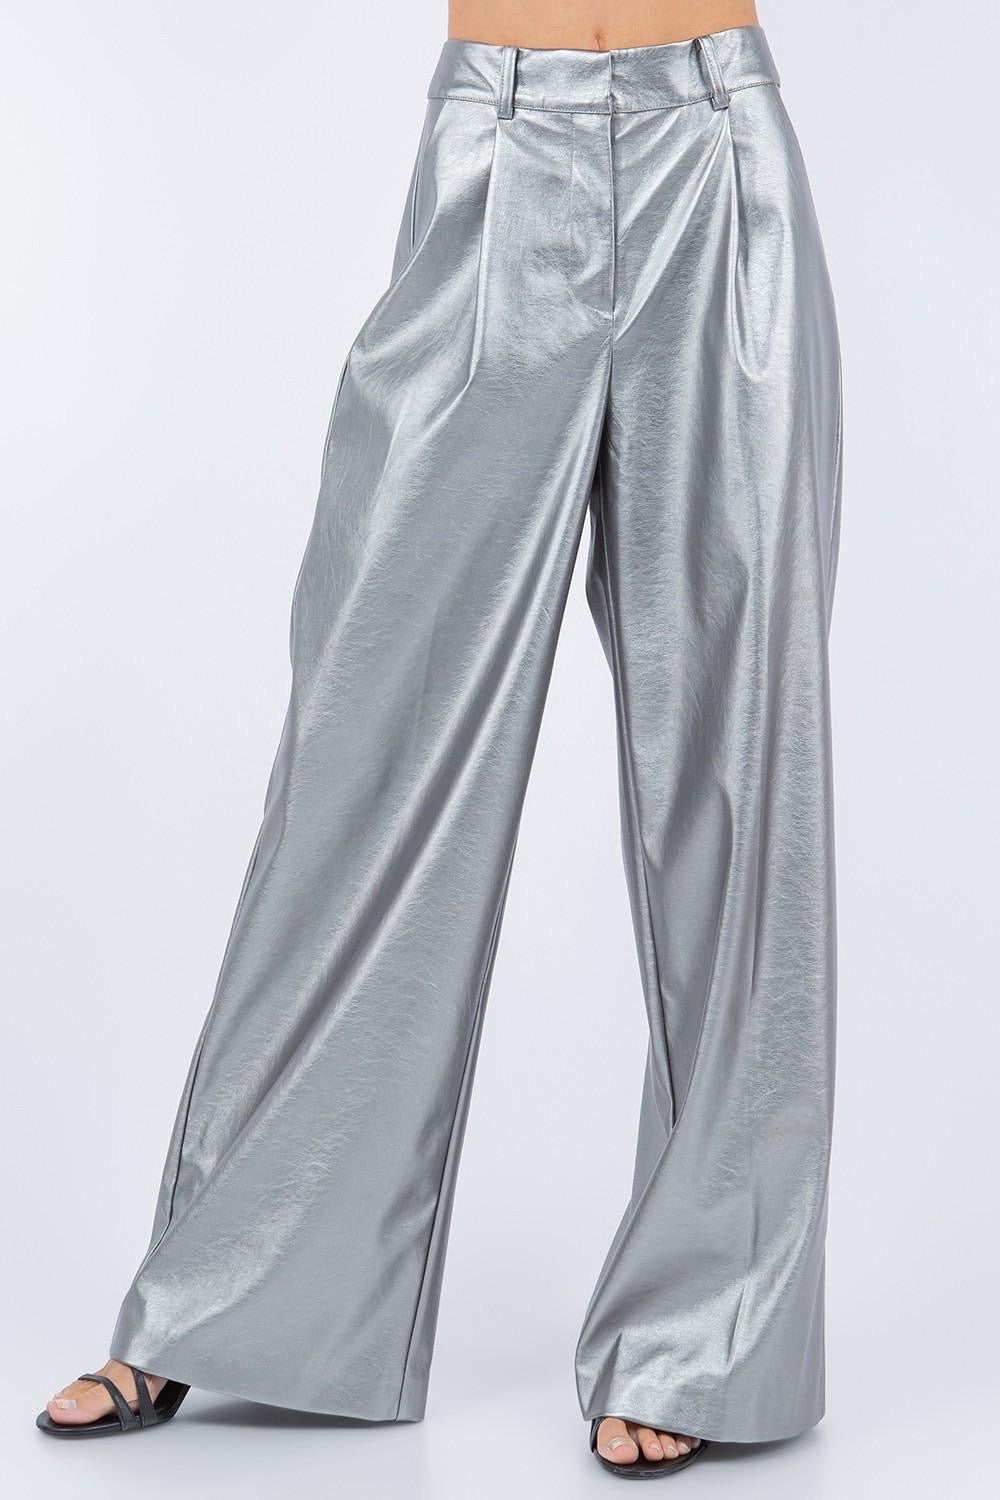 Silver High Waist Pants